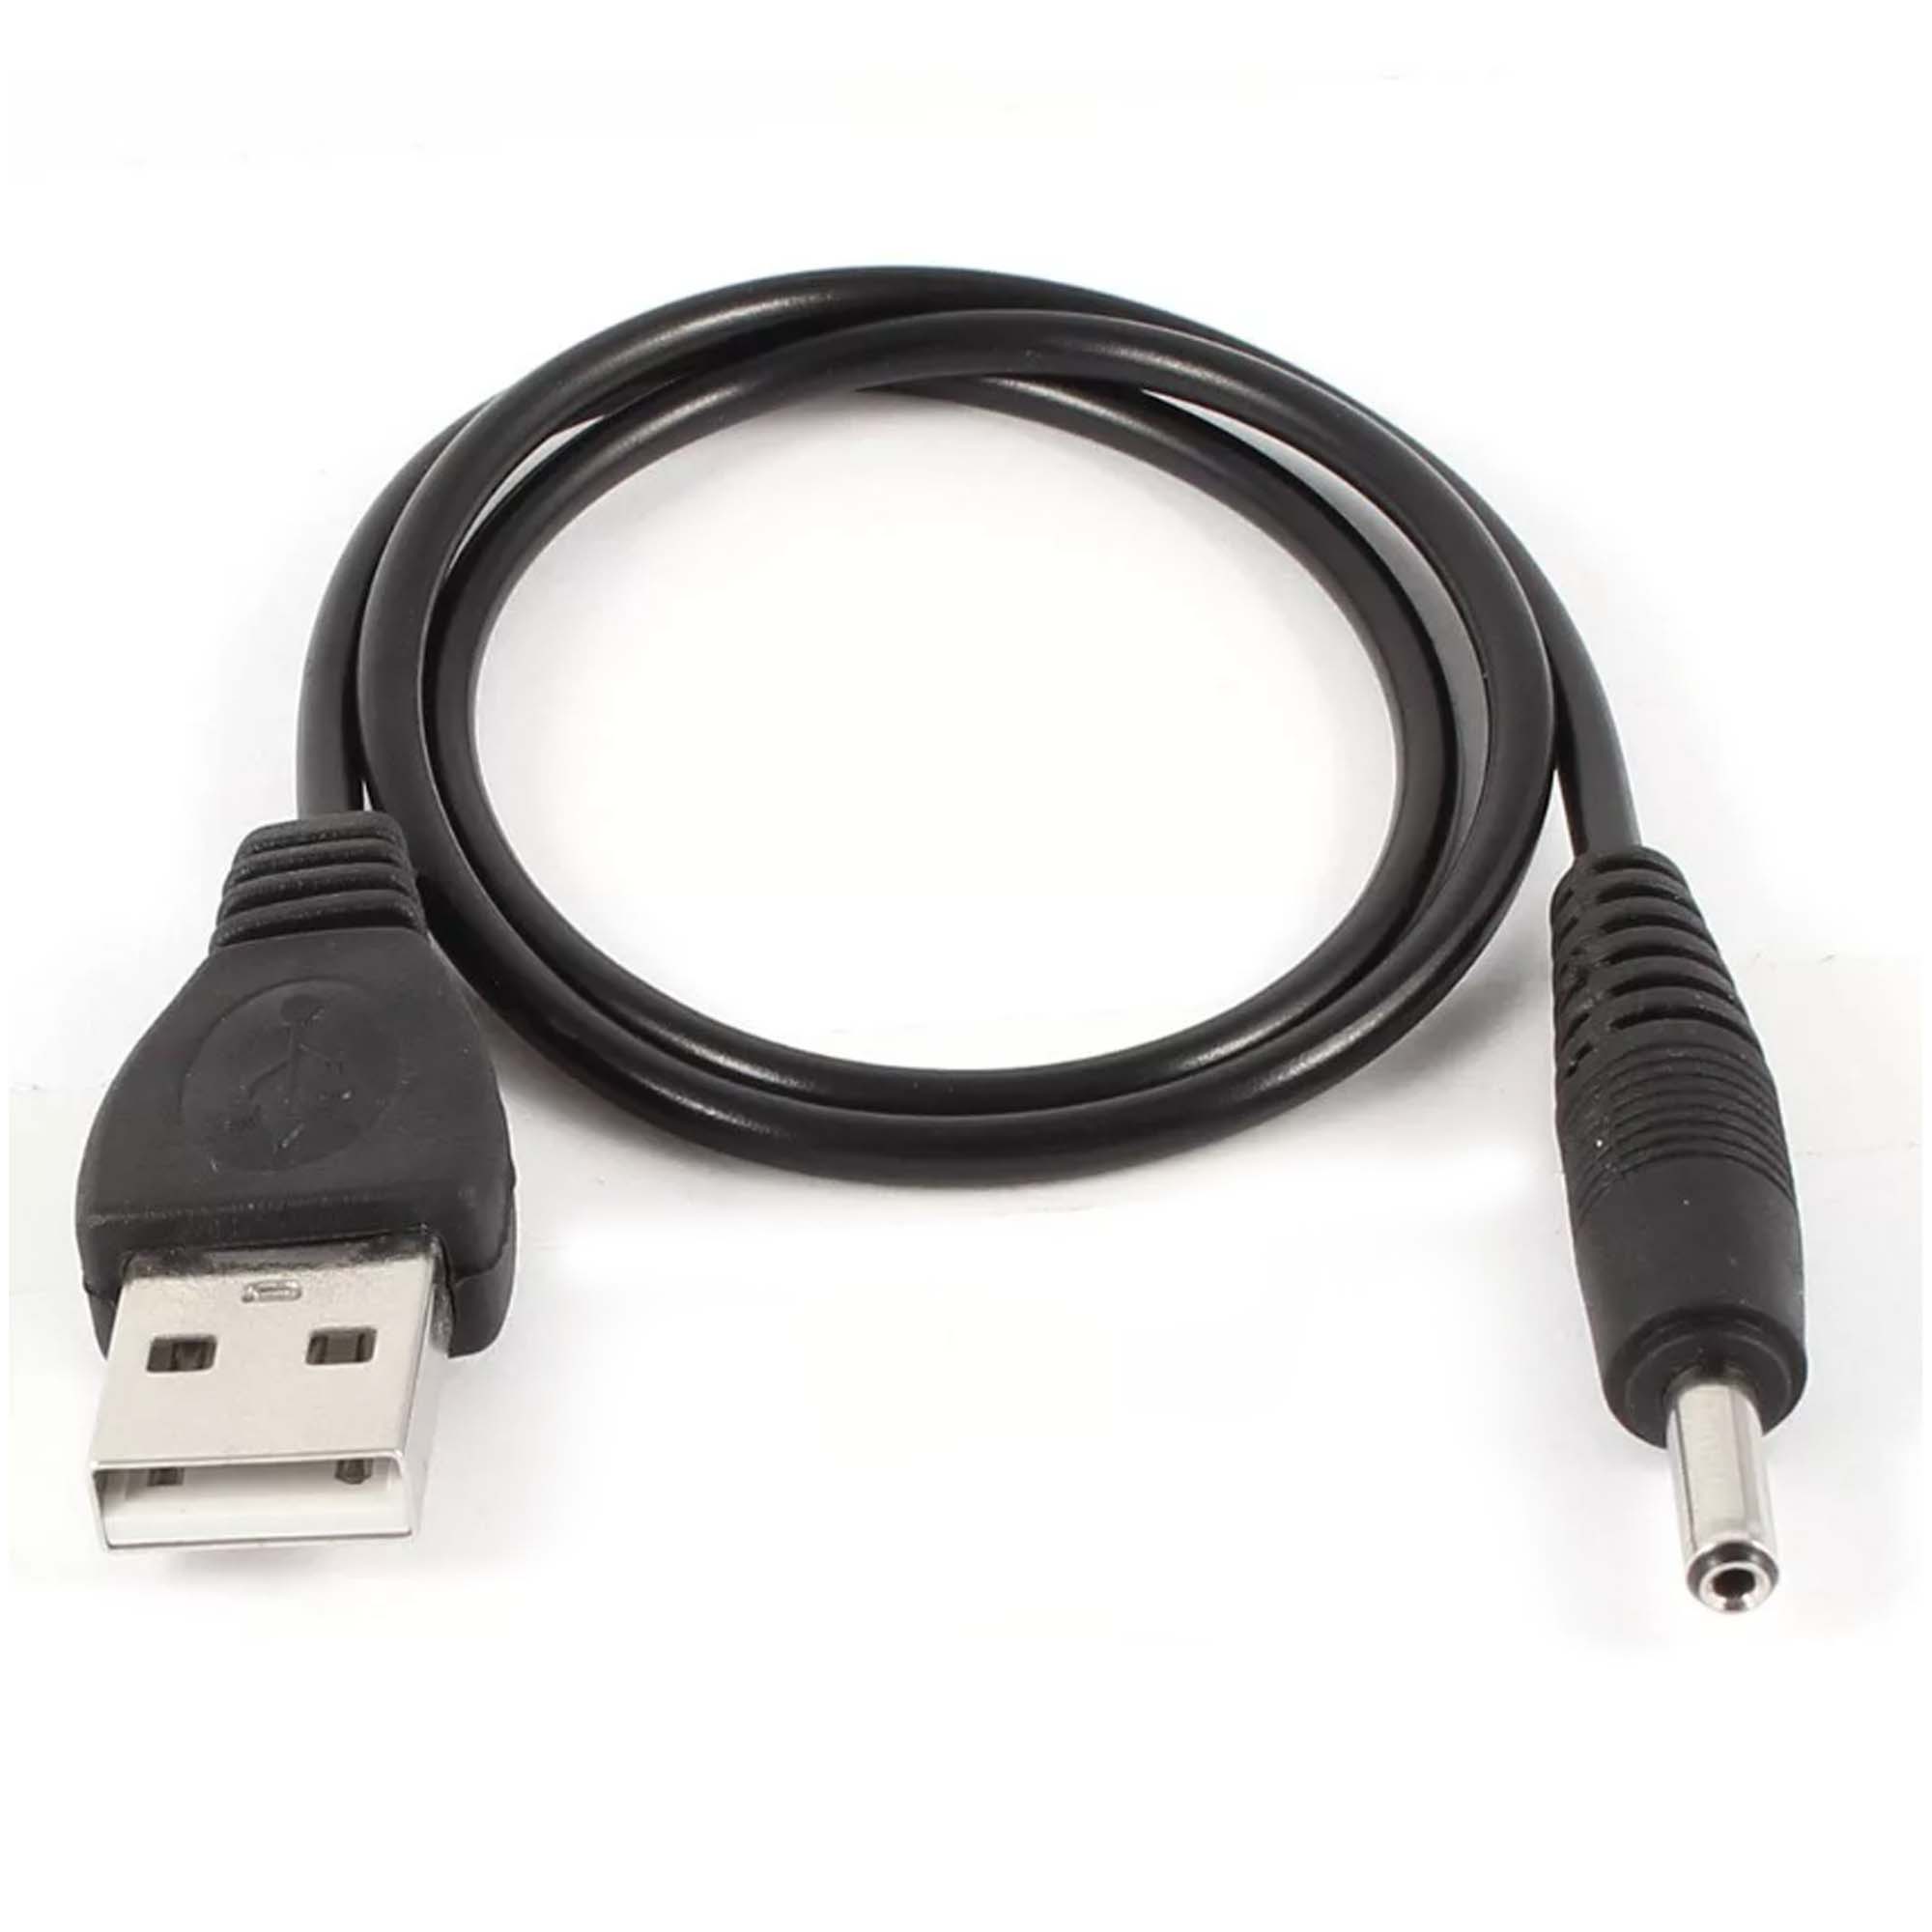  USB-DC 5.5*2.1 1 ..